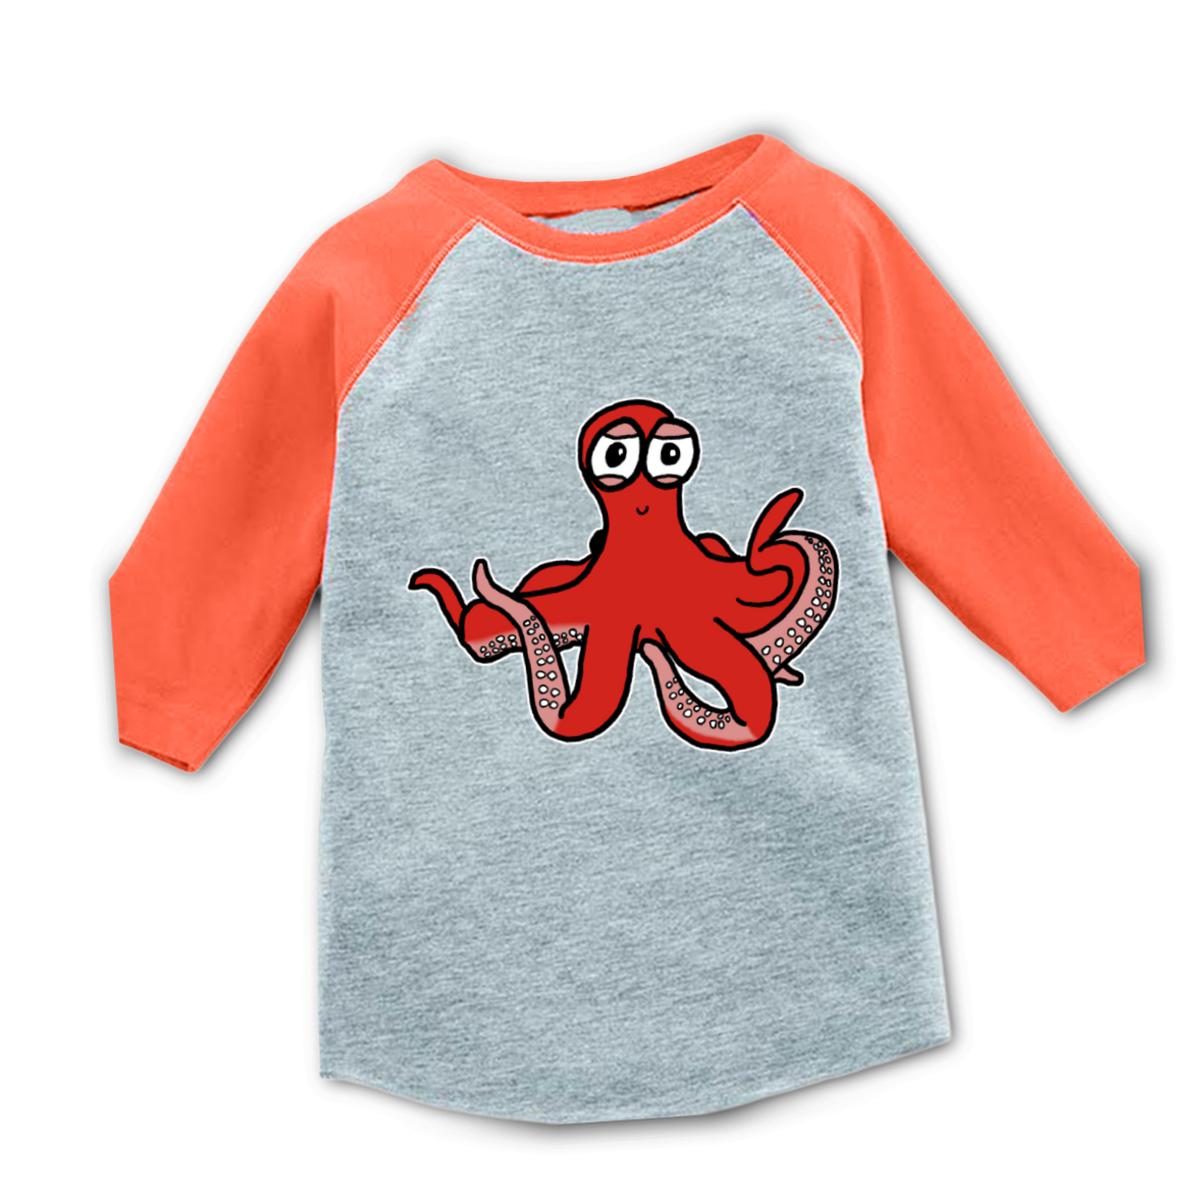 Octopus Toddler Raglan Tee 56T heather-orange